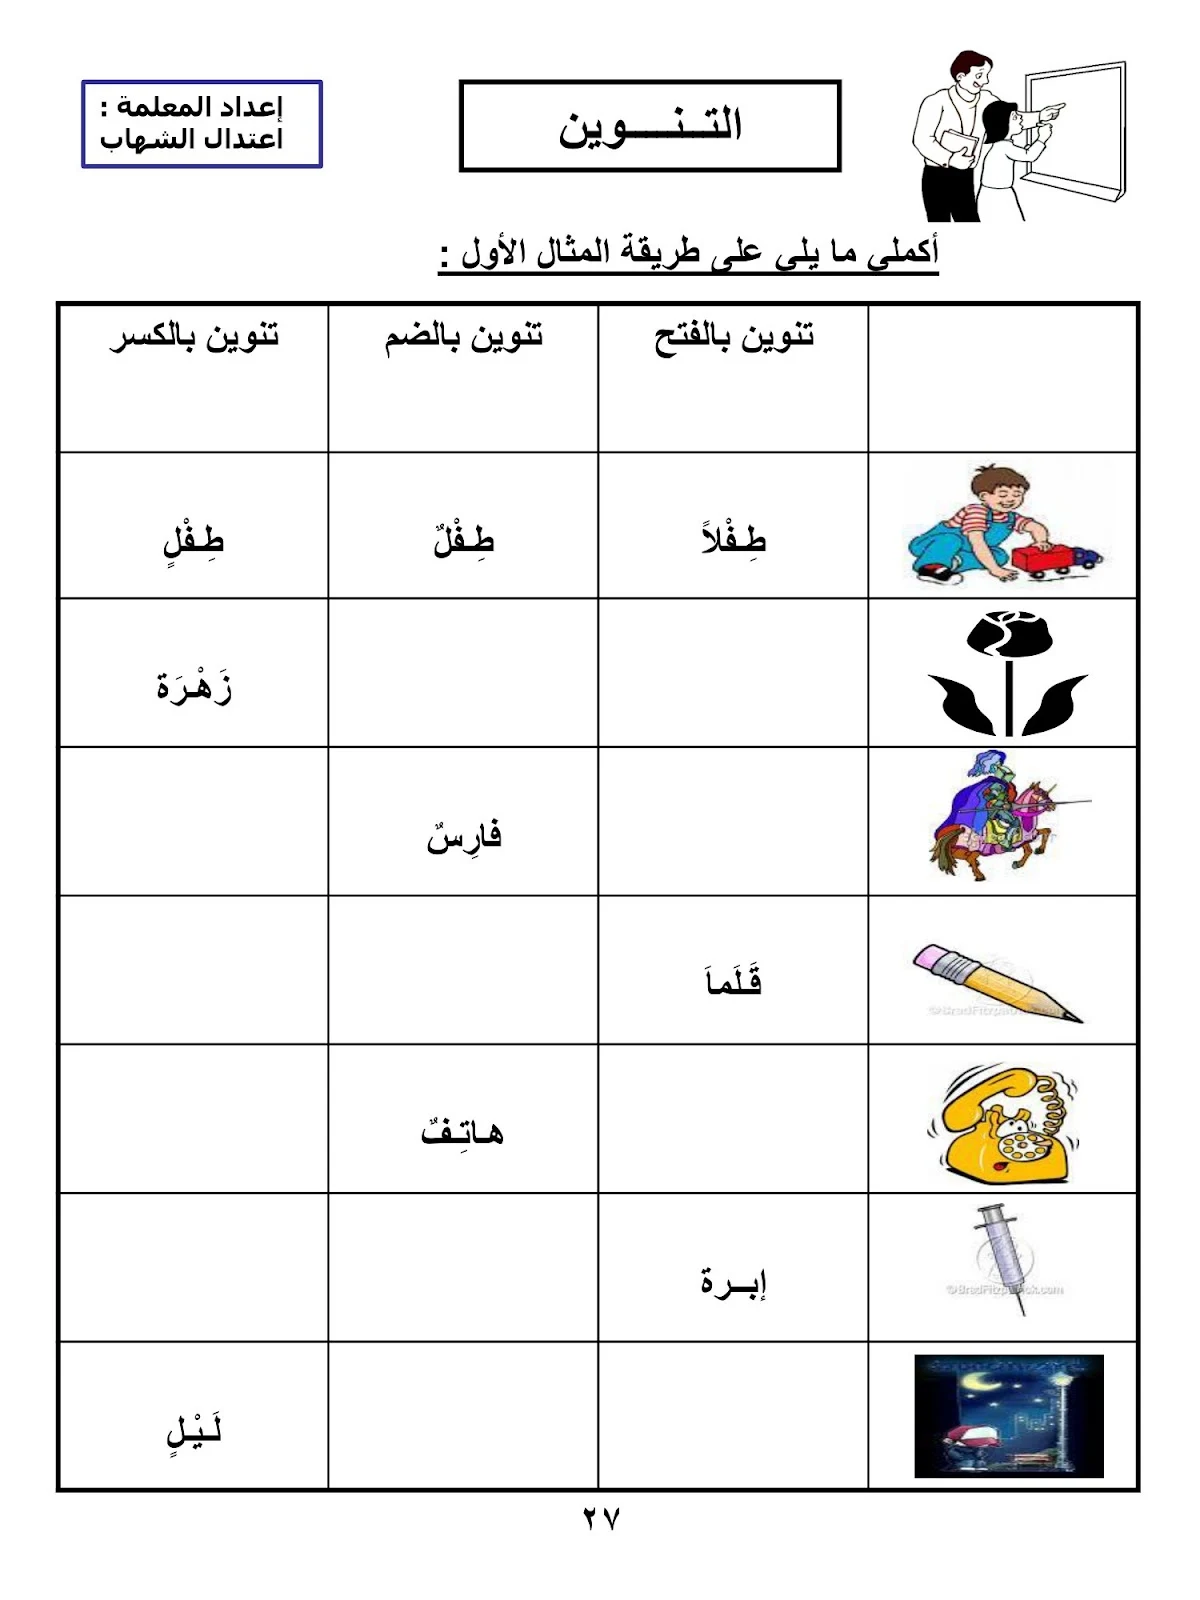 مذكرة تأسيس اللغة العربية مع شرح pdf تحميل مباشر